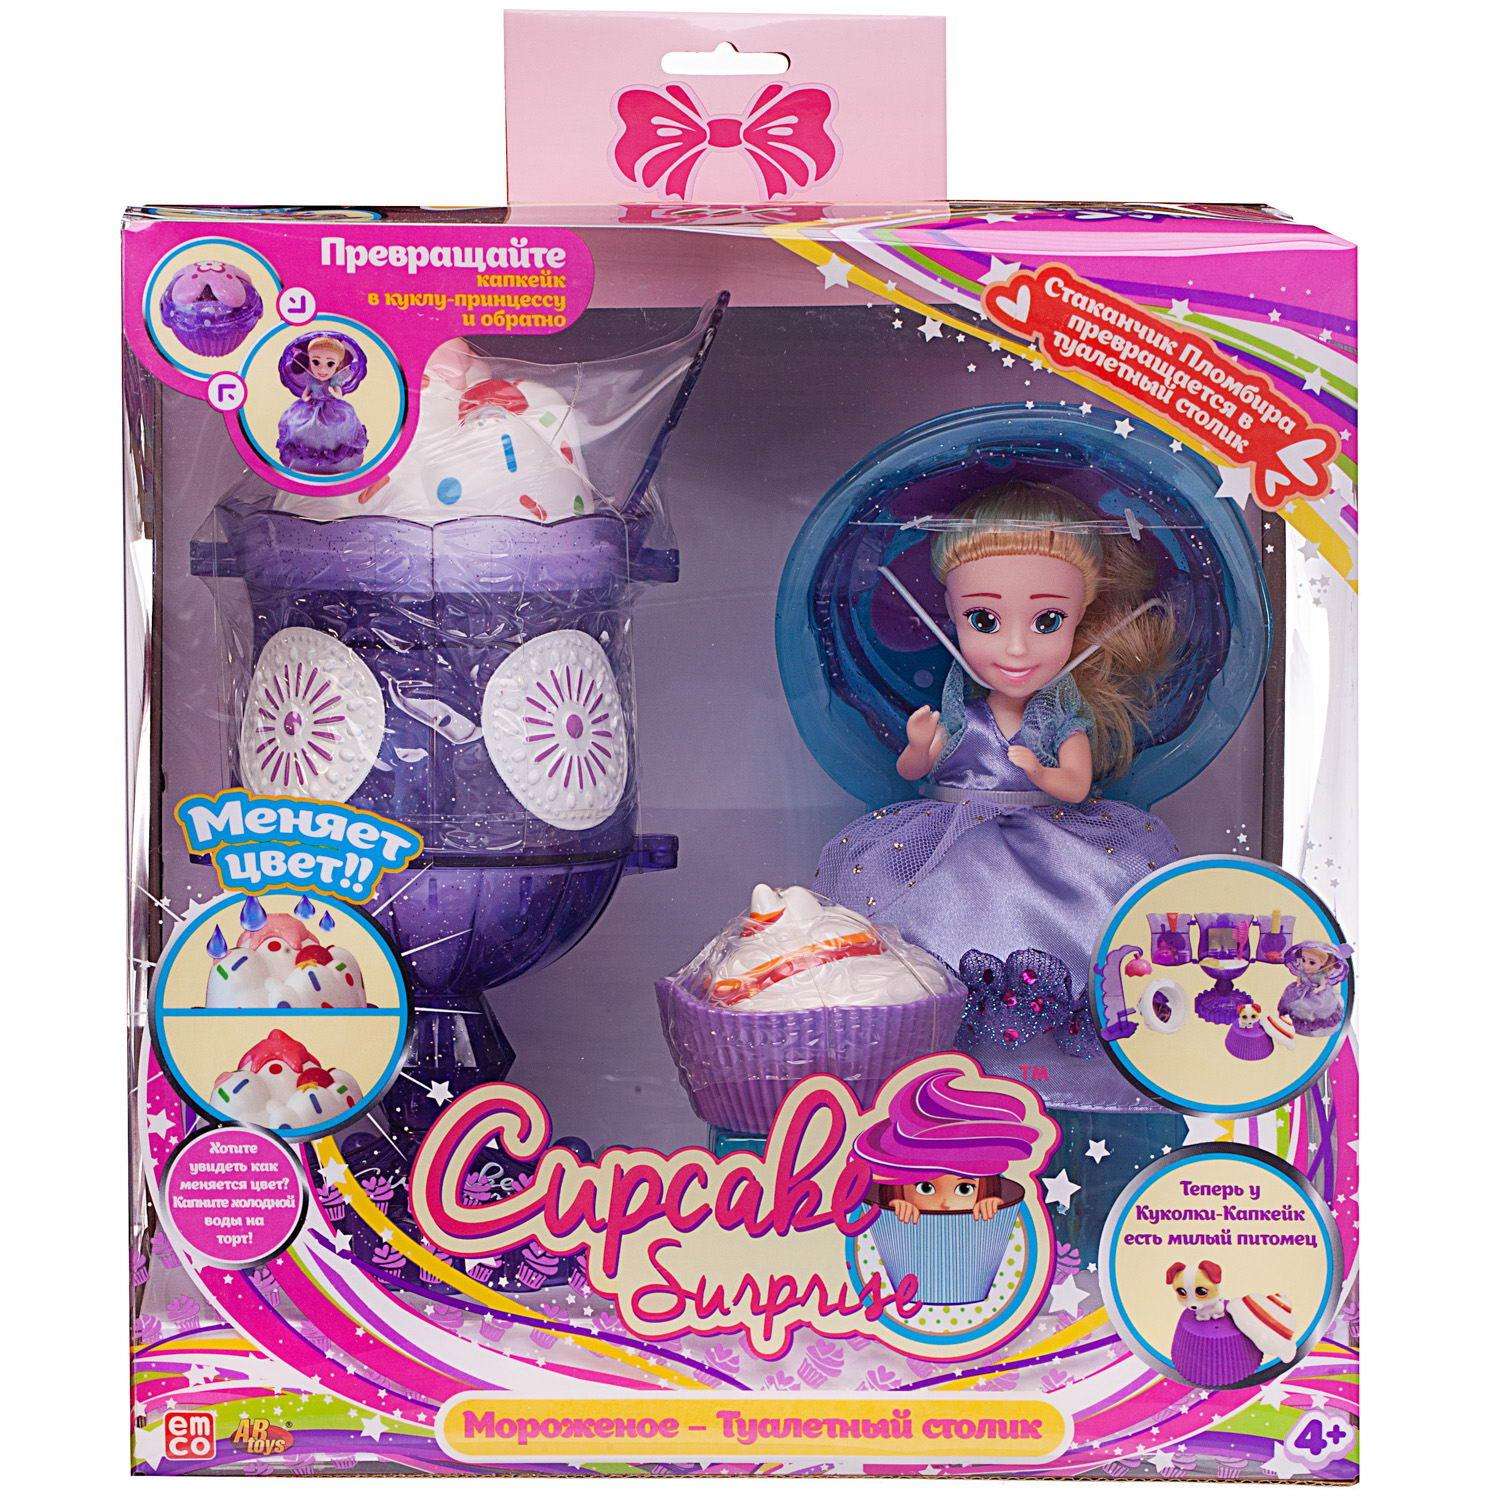 Игровой набор Туалетный столик ABTOYS куколка Capecake Surprise с питомцем цвет фиолетовой 1140/фиолетовый - фото 1